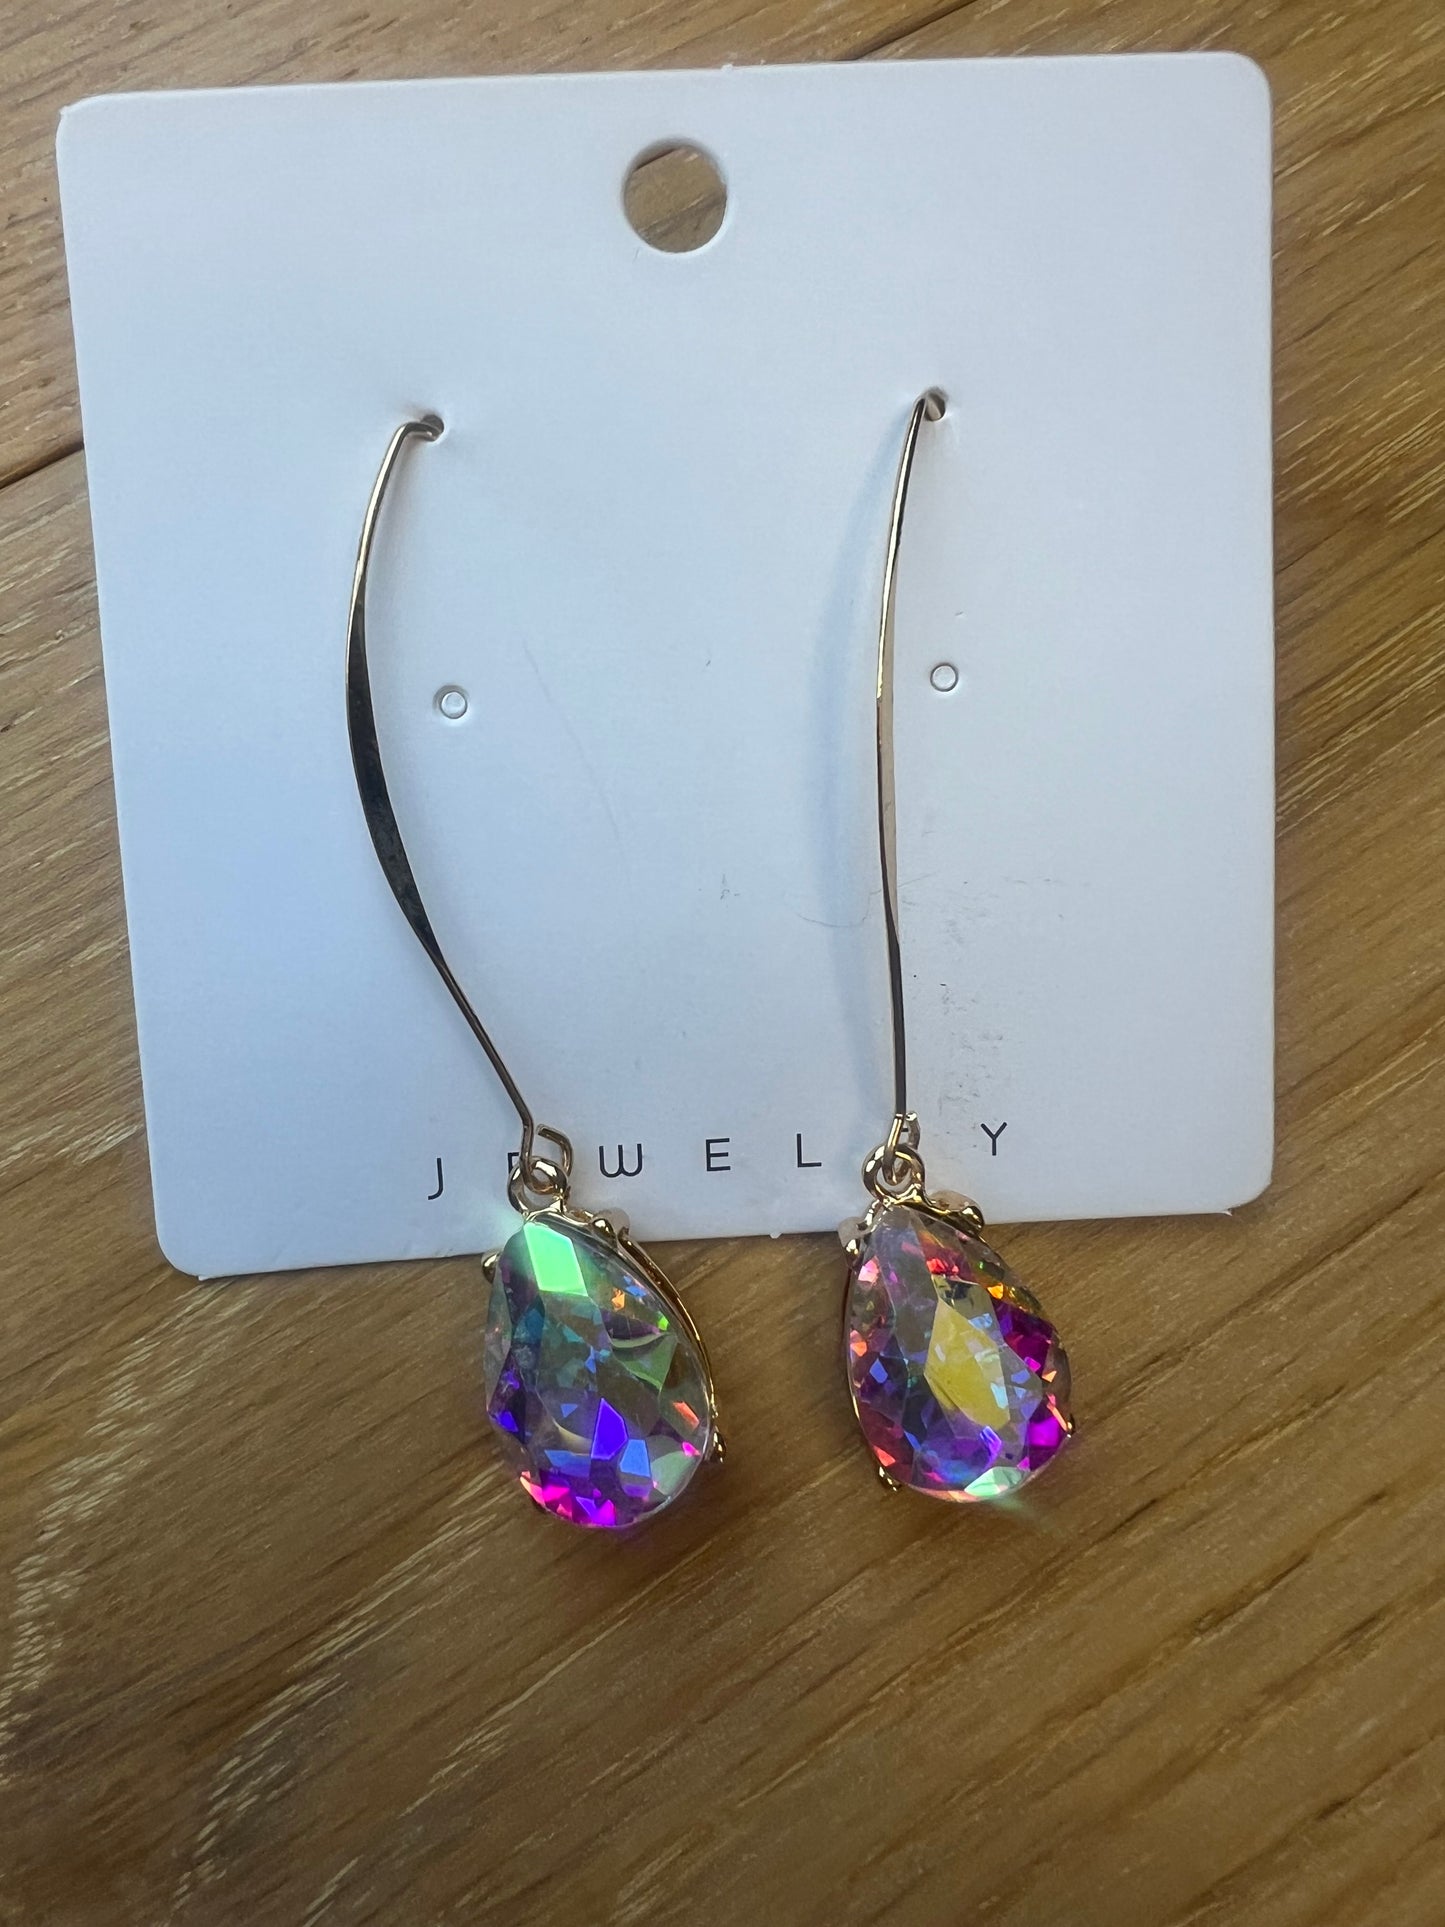 Elegant hanging earrings